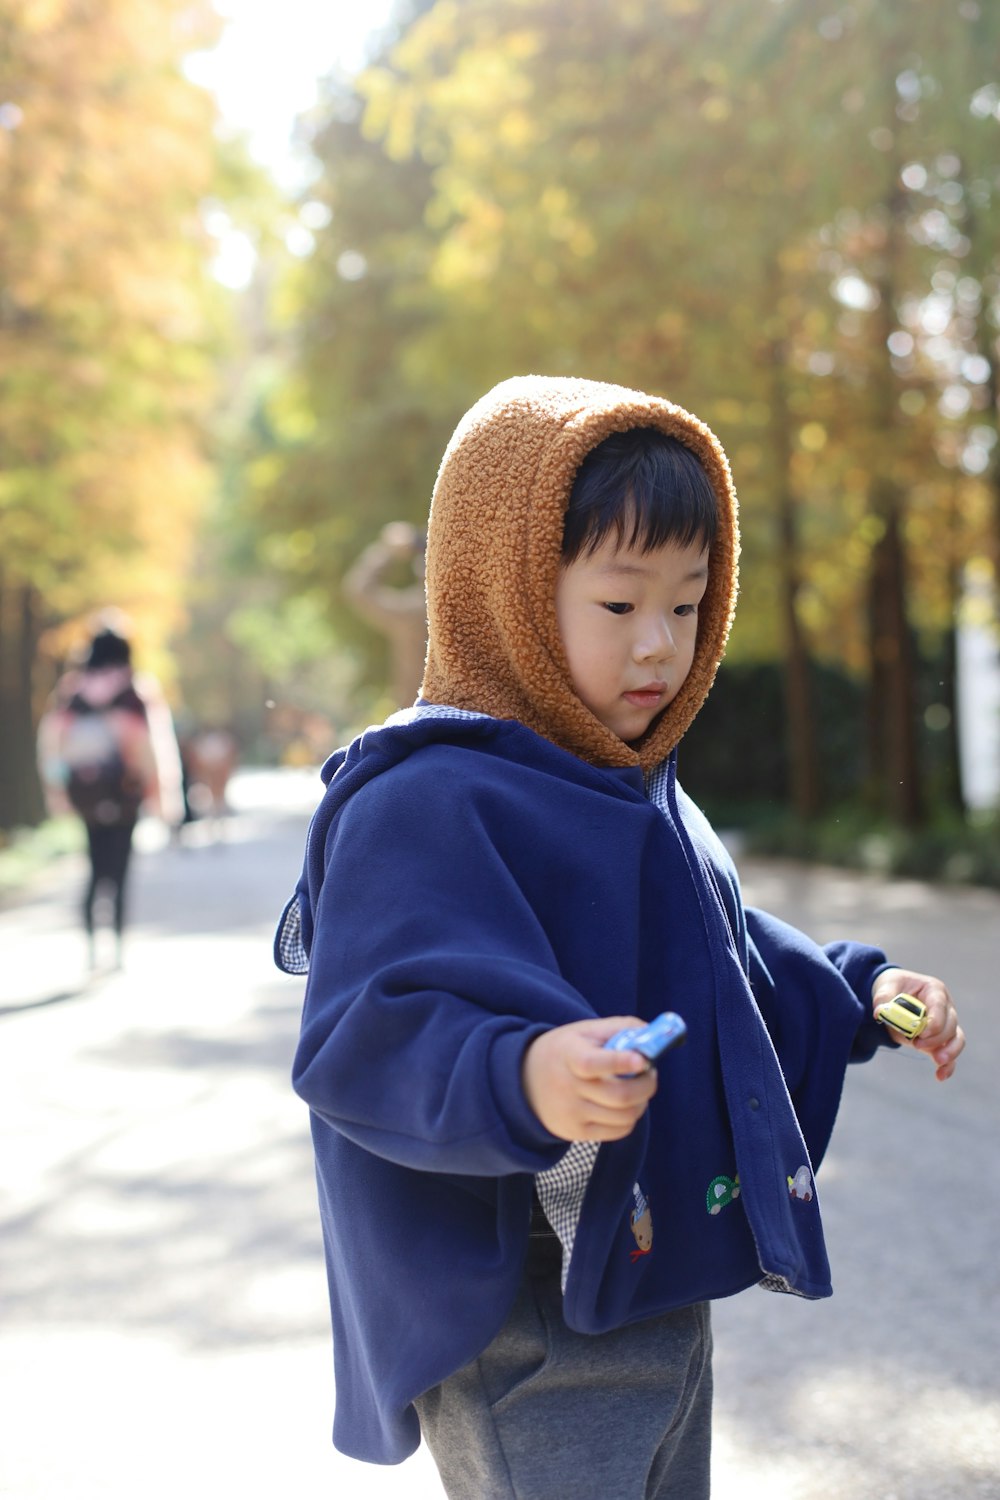 Un niño con una sudadera con capucha azul sosteniendo un teléfono celular